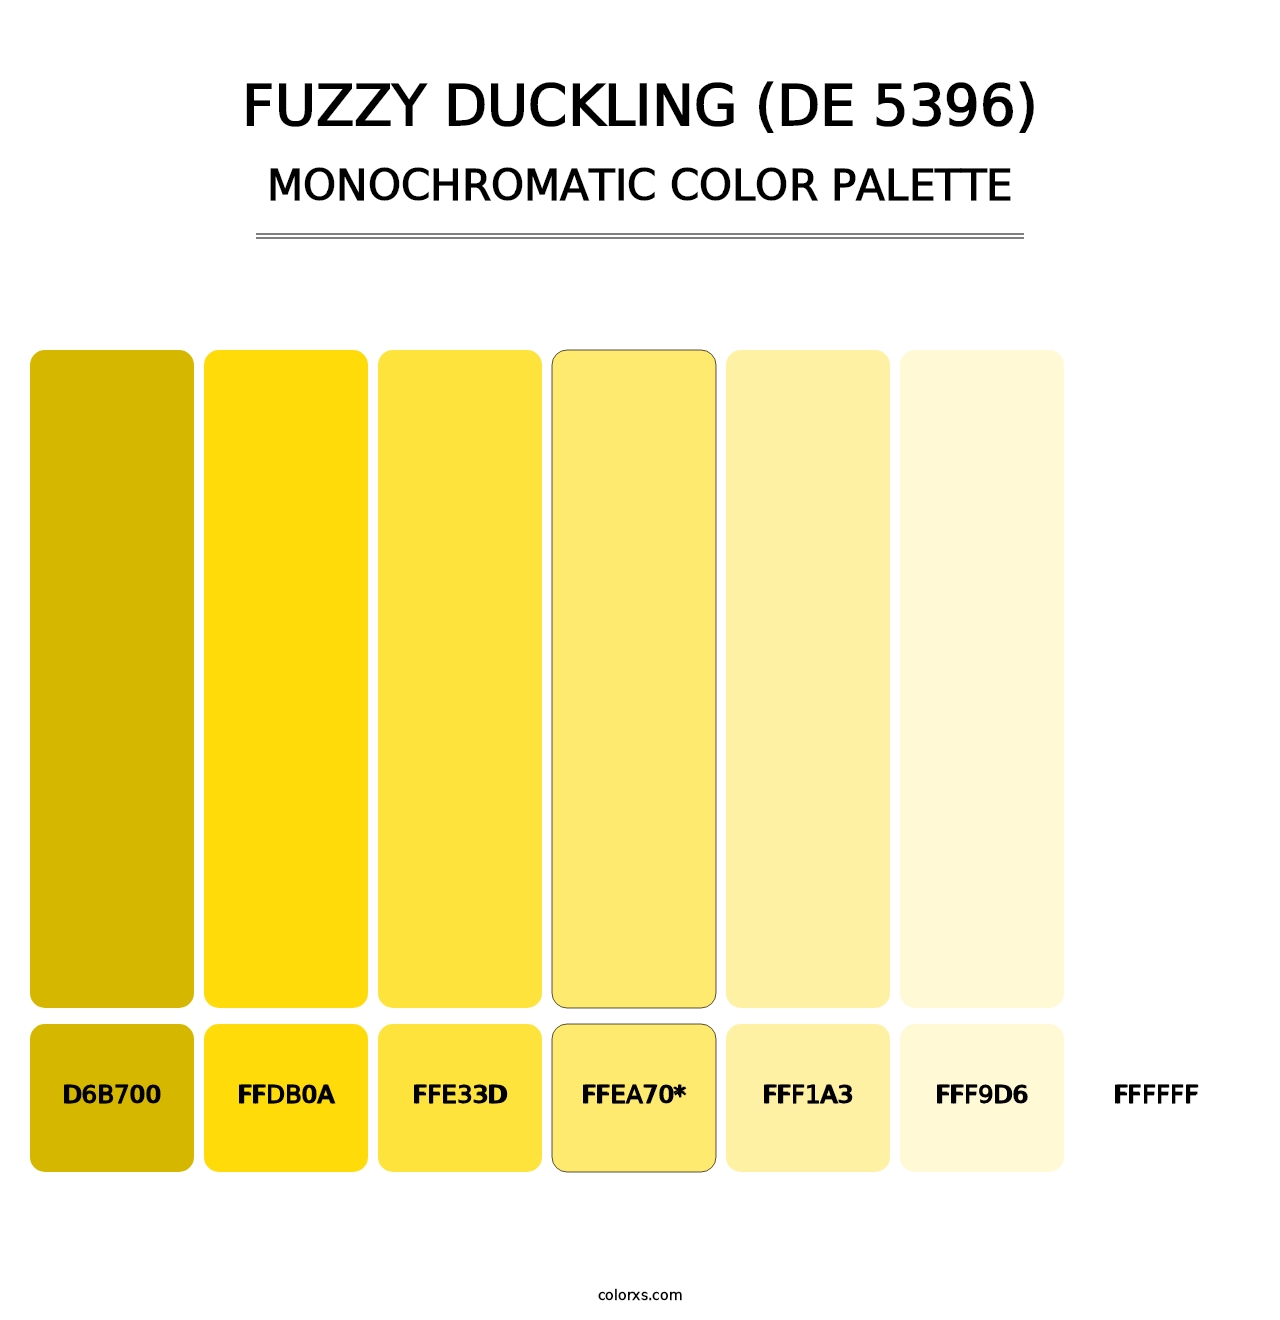 Fuzzy Duckling (DE 5396) - Monochromatic Color Palette